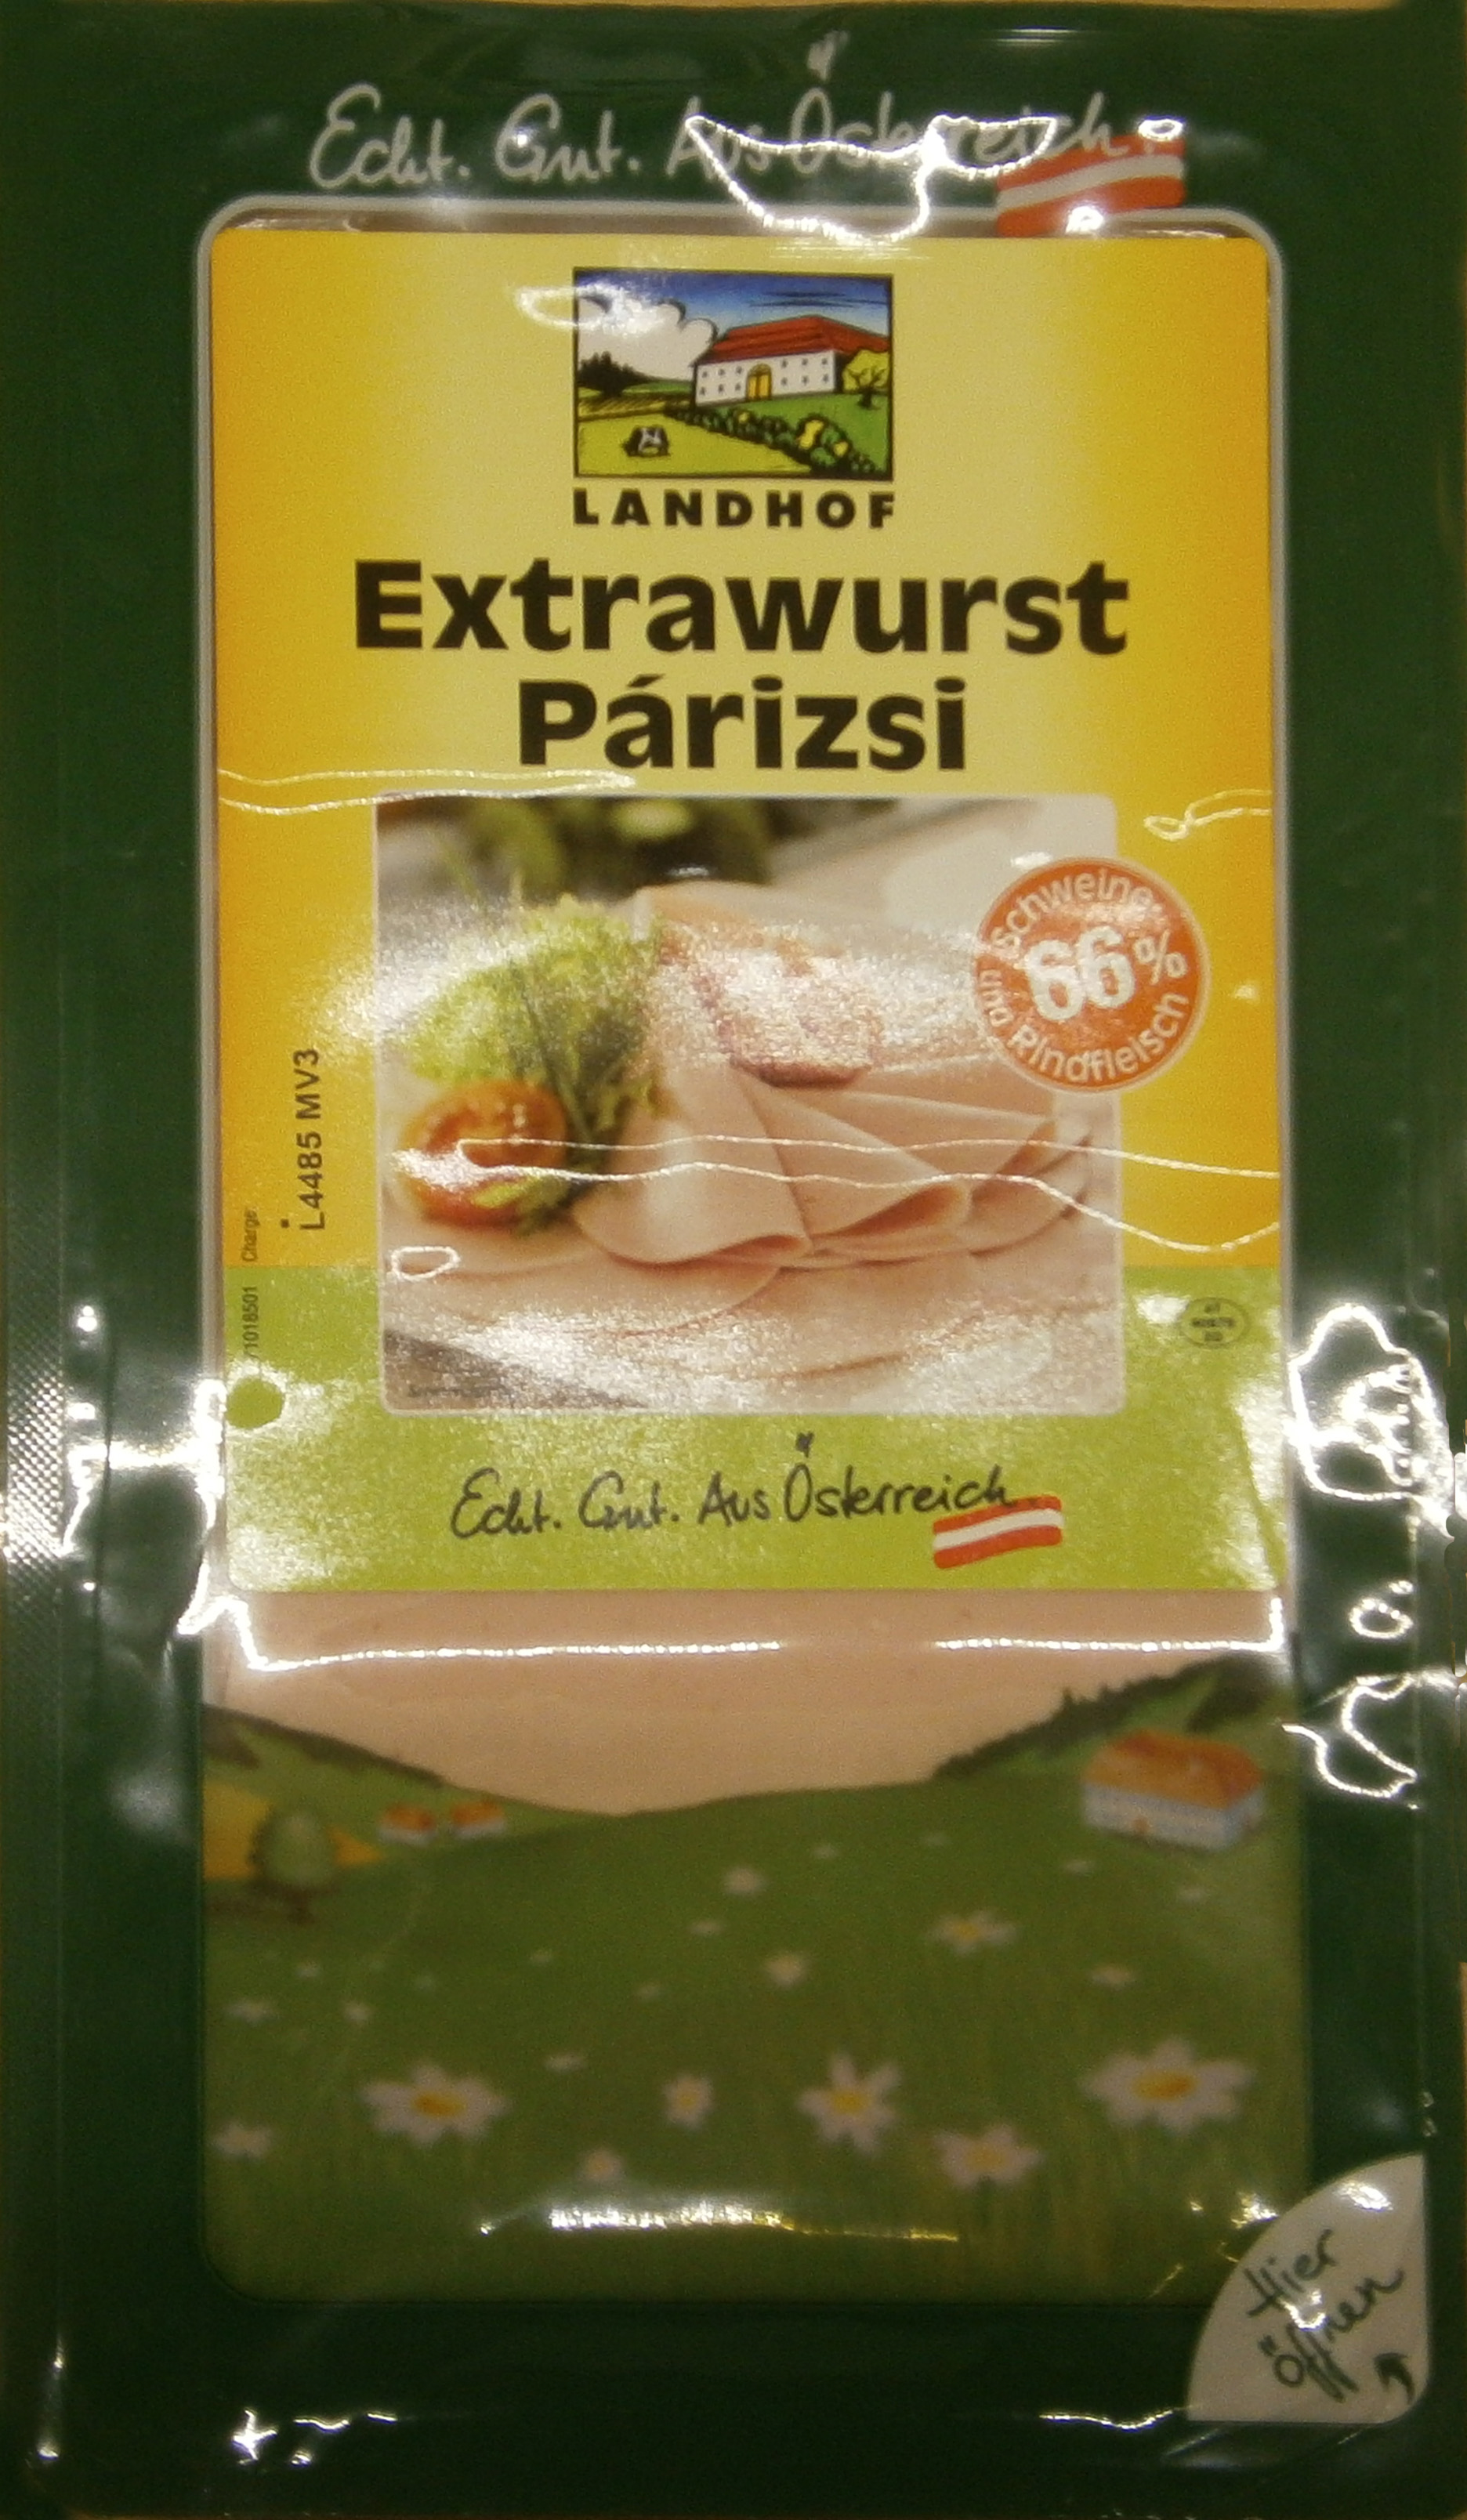 Landhof Extrawurst